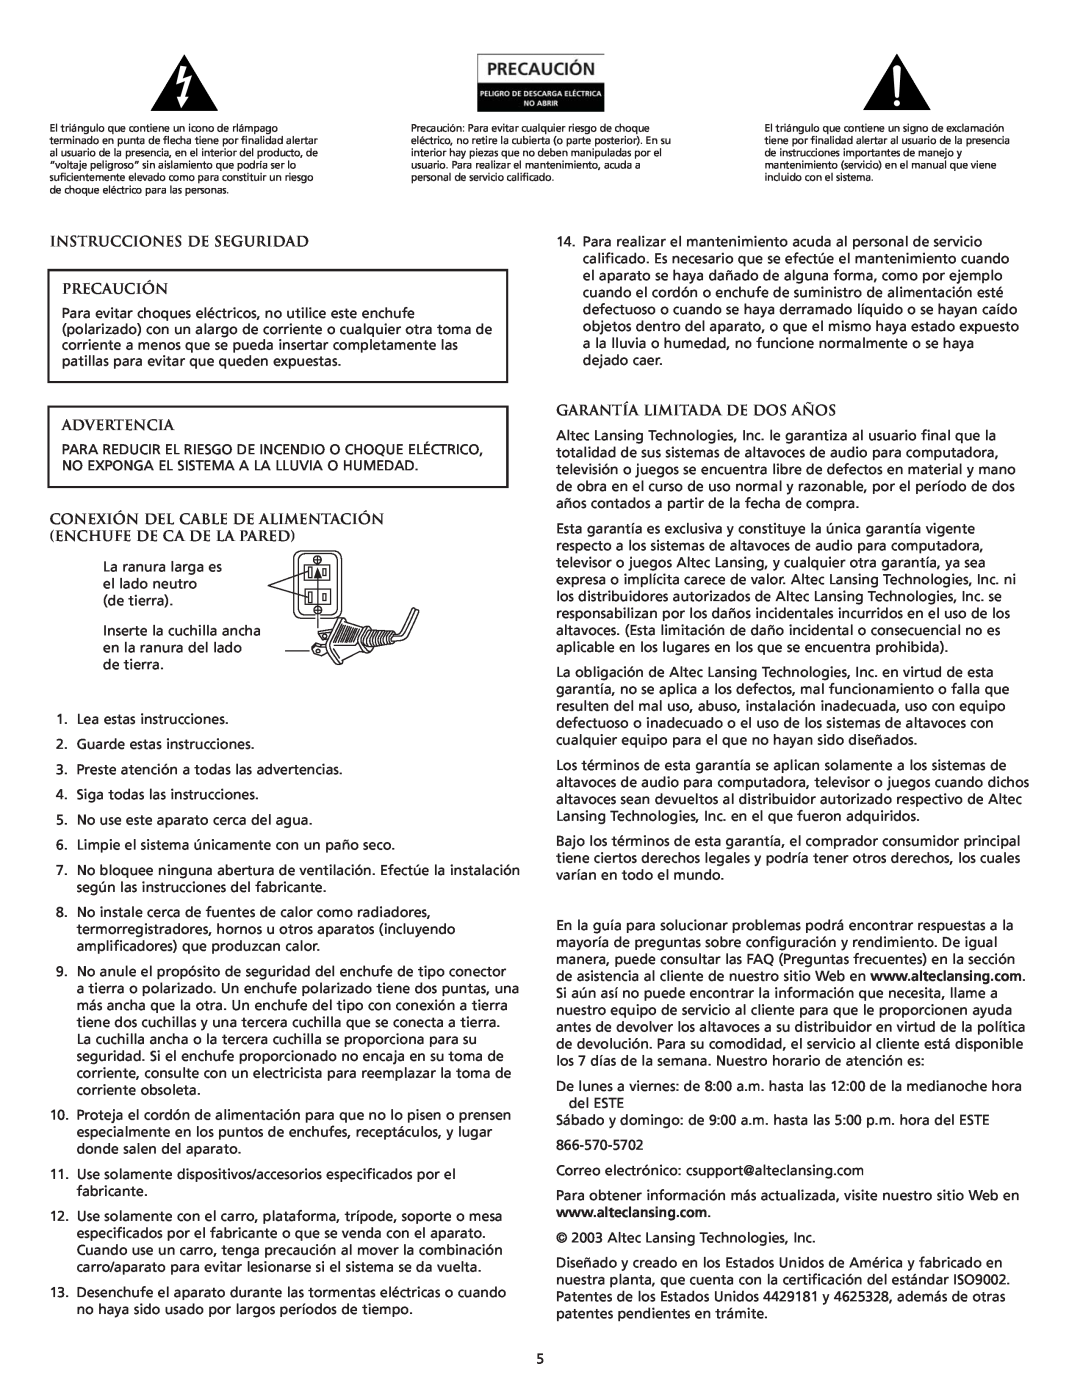 Altec Lansing VS4121 manual Instrucciones De Seguridad Precaución, Advertencia, Garantía Limitada De Dos Años 